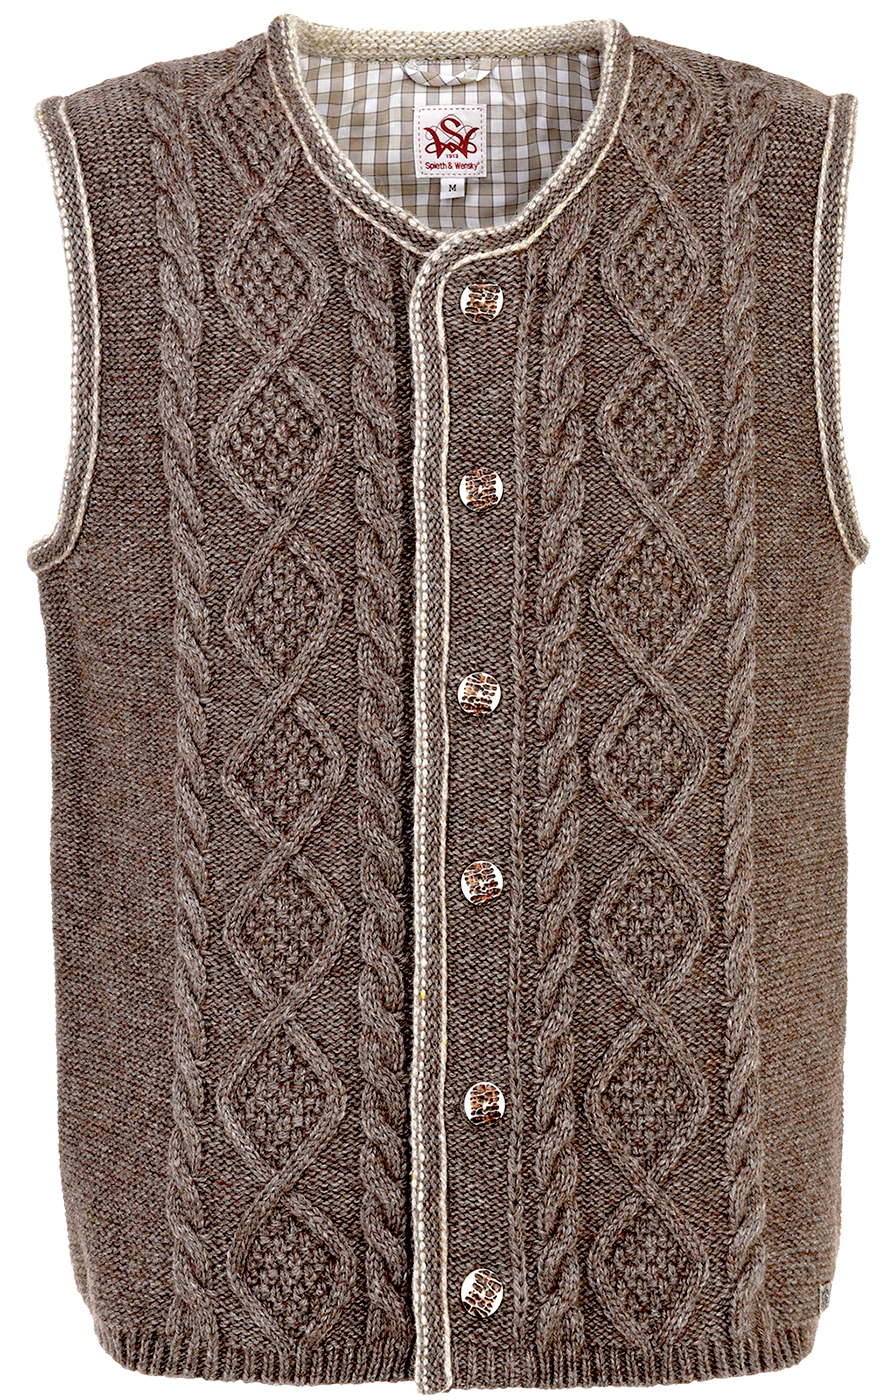 weitere Bilder von German knitted waistcoat ERMELO beige brown